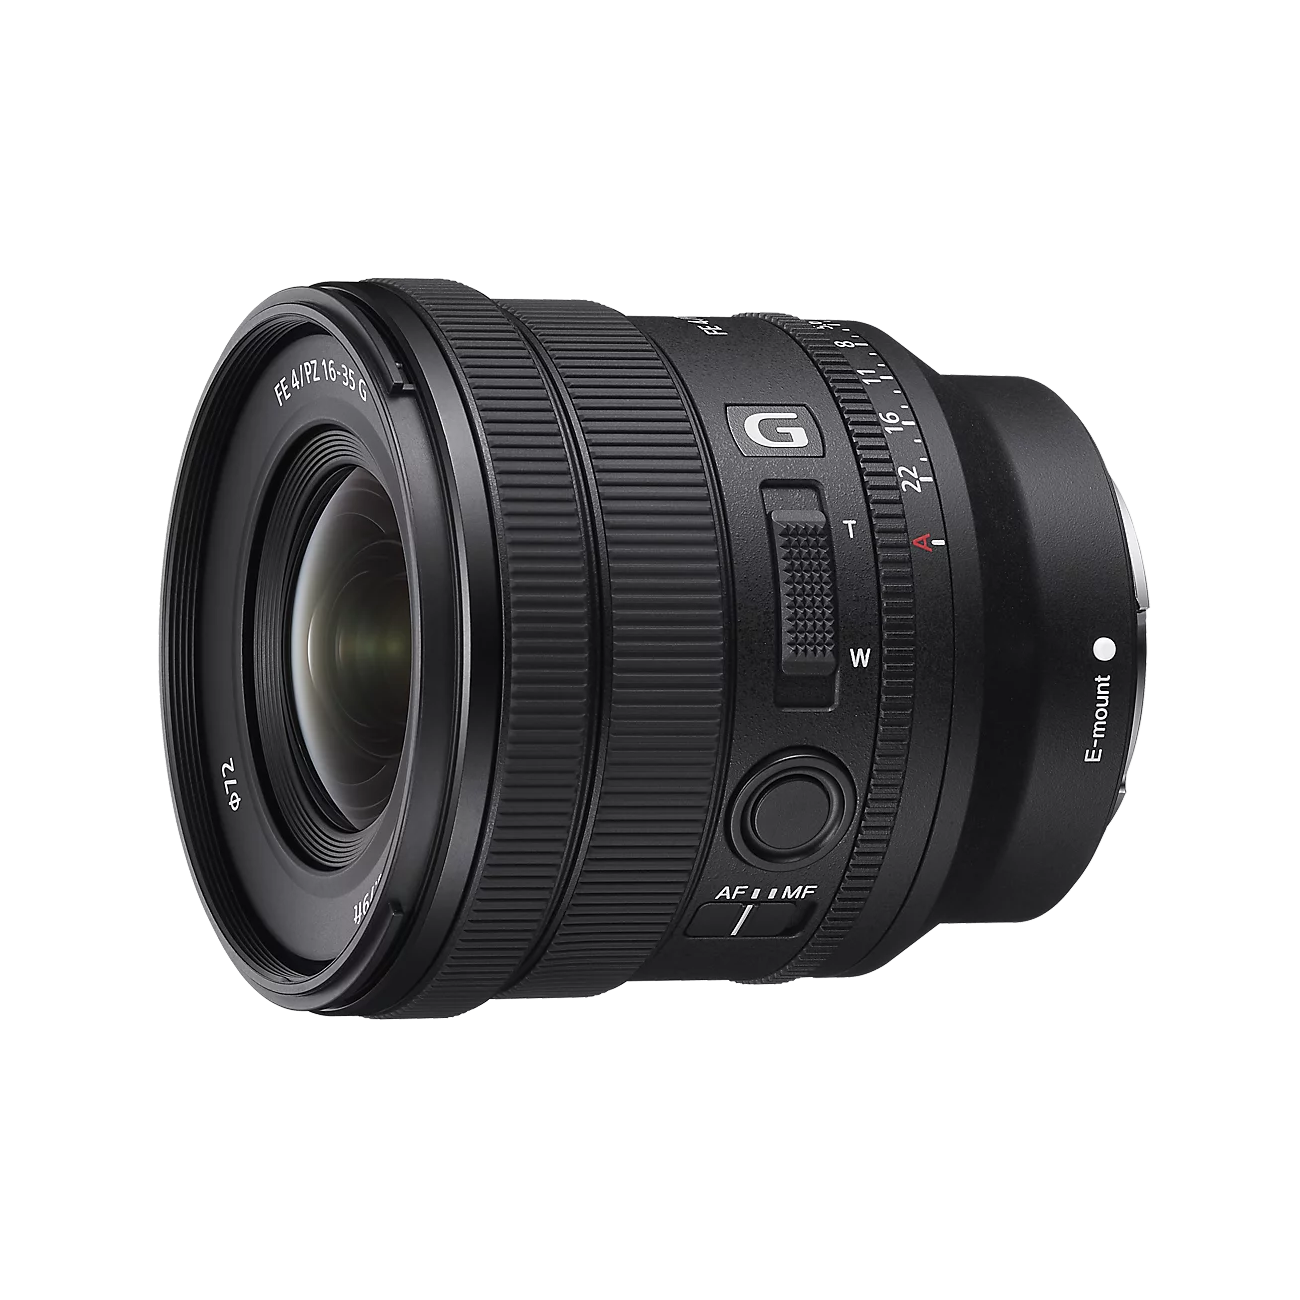 SELP1635G | Ống kính Sony zoom xa góc rộng siêu nhẹ, linh hoạt_2